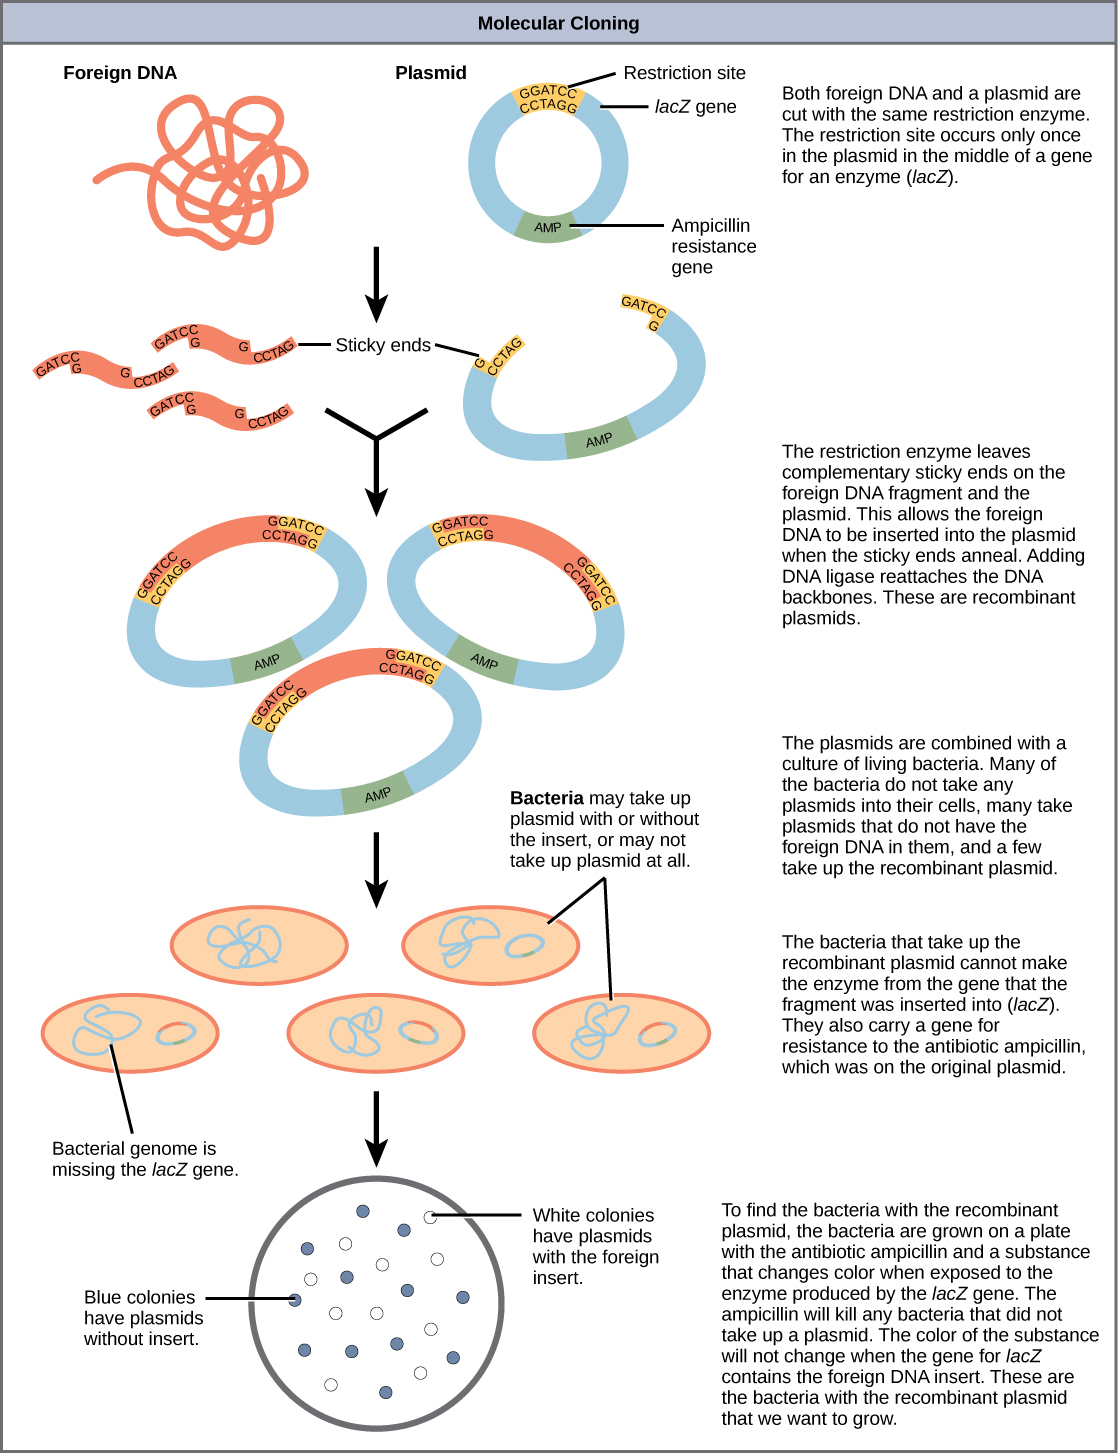 Ілюстрація, на якій показані етапи створення рекомбінантних ДНК-плазмід, введення їх в бактерії, а потім відбір тільки тих бактерій, які успішно взялися за рекомбінантну плазміду. Етапи такі: і чужорідна ДНК, і плазміда розрізаються одним і тим же рестрикційним ферментом. Місце обмеження відбувається лише один раз в плазміді в середині гена для ферменту (LaCz). Рестрикційний фермент залишає комплементарні липкі кінці на чужорідному фрагменті ДНК і плазміді. Це дозволяє чужорідну ДНК вставляти в плазміду, коли липкі кінці відпалюються. Додавання ДНК-лігази відновлює кістяк ДНК. Це рекомбінантні плазміди. Плазміди поєднуються з культурою живих бактерій. Багато з бактерій не беруть ніяких плазмід в свої клітини, багато беруть плазміди, які не мають в них чужорідної ДНК, і деякі беруться за рекомбінантну плазміду. Бактерії, які займають рекомбінантну плазміду, не можуть зробити фермент з гена, в який був введений фрагмент (LaCz). Вони також несуть ген резистентності до антибіотика ампіциліну, який знаходився на вихідній плазміді. Щоб знайти бактерії за допомогою рекомбінантної плазміди, бактерії вирощують на пластині з антибіотиком ампіциліном та речовиною, яка змінює колір при впливі ферменту, що виробляється геном LaCz. Ампіцилін вб'є будь-які бактерії, які не зайняли плазміду. Колір речовини не зміниться, коли ген LaCz містить чужорідну вставку ДНК. Це бактерії з рекомбінантною плазмідою, яку ми хочемо вирощувати.